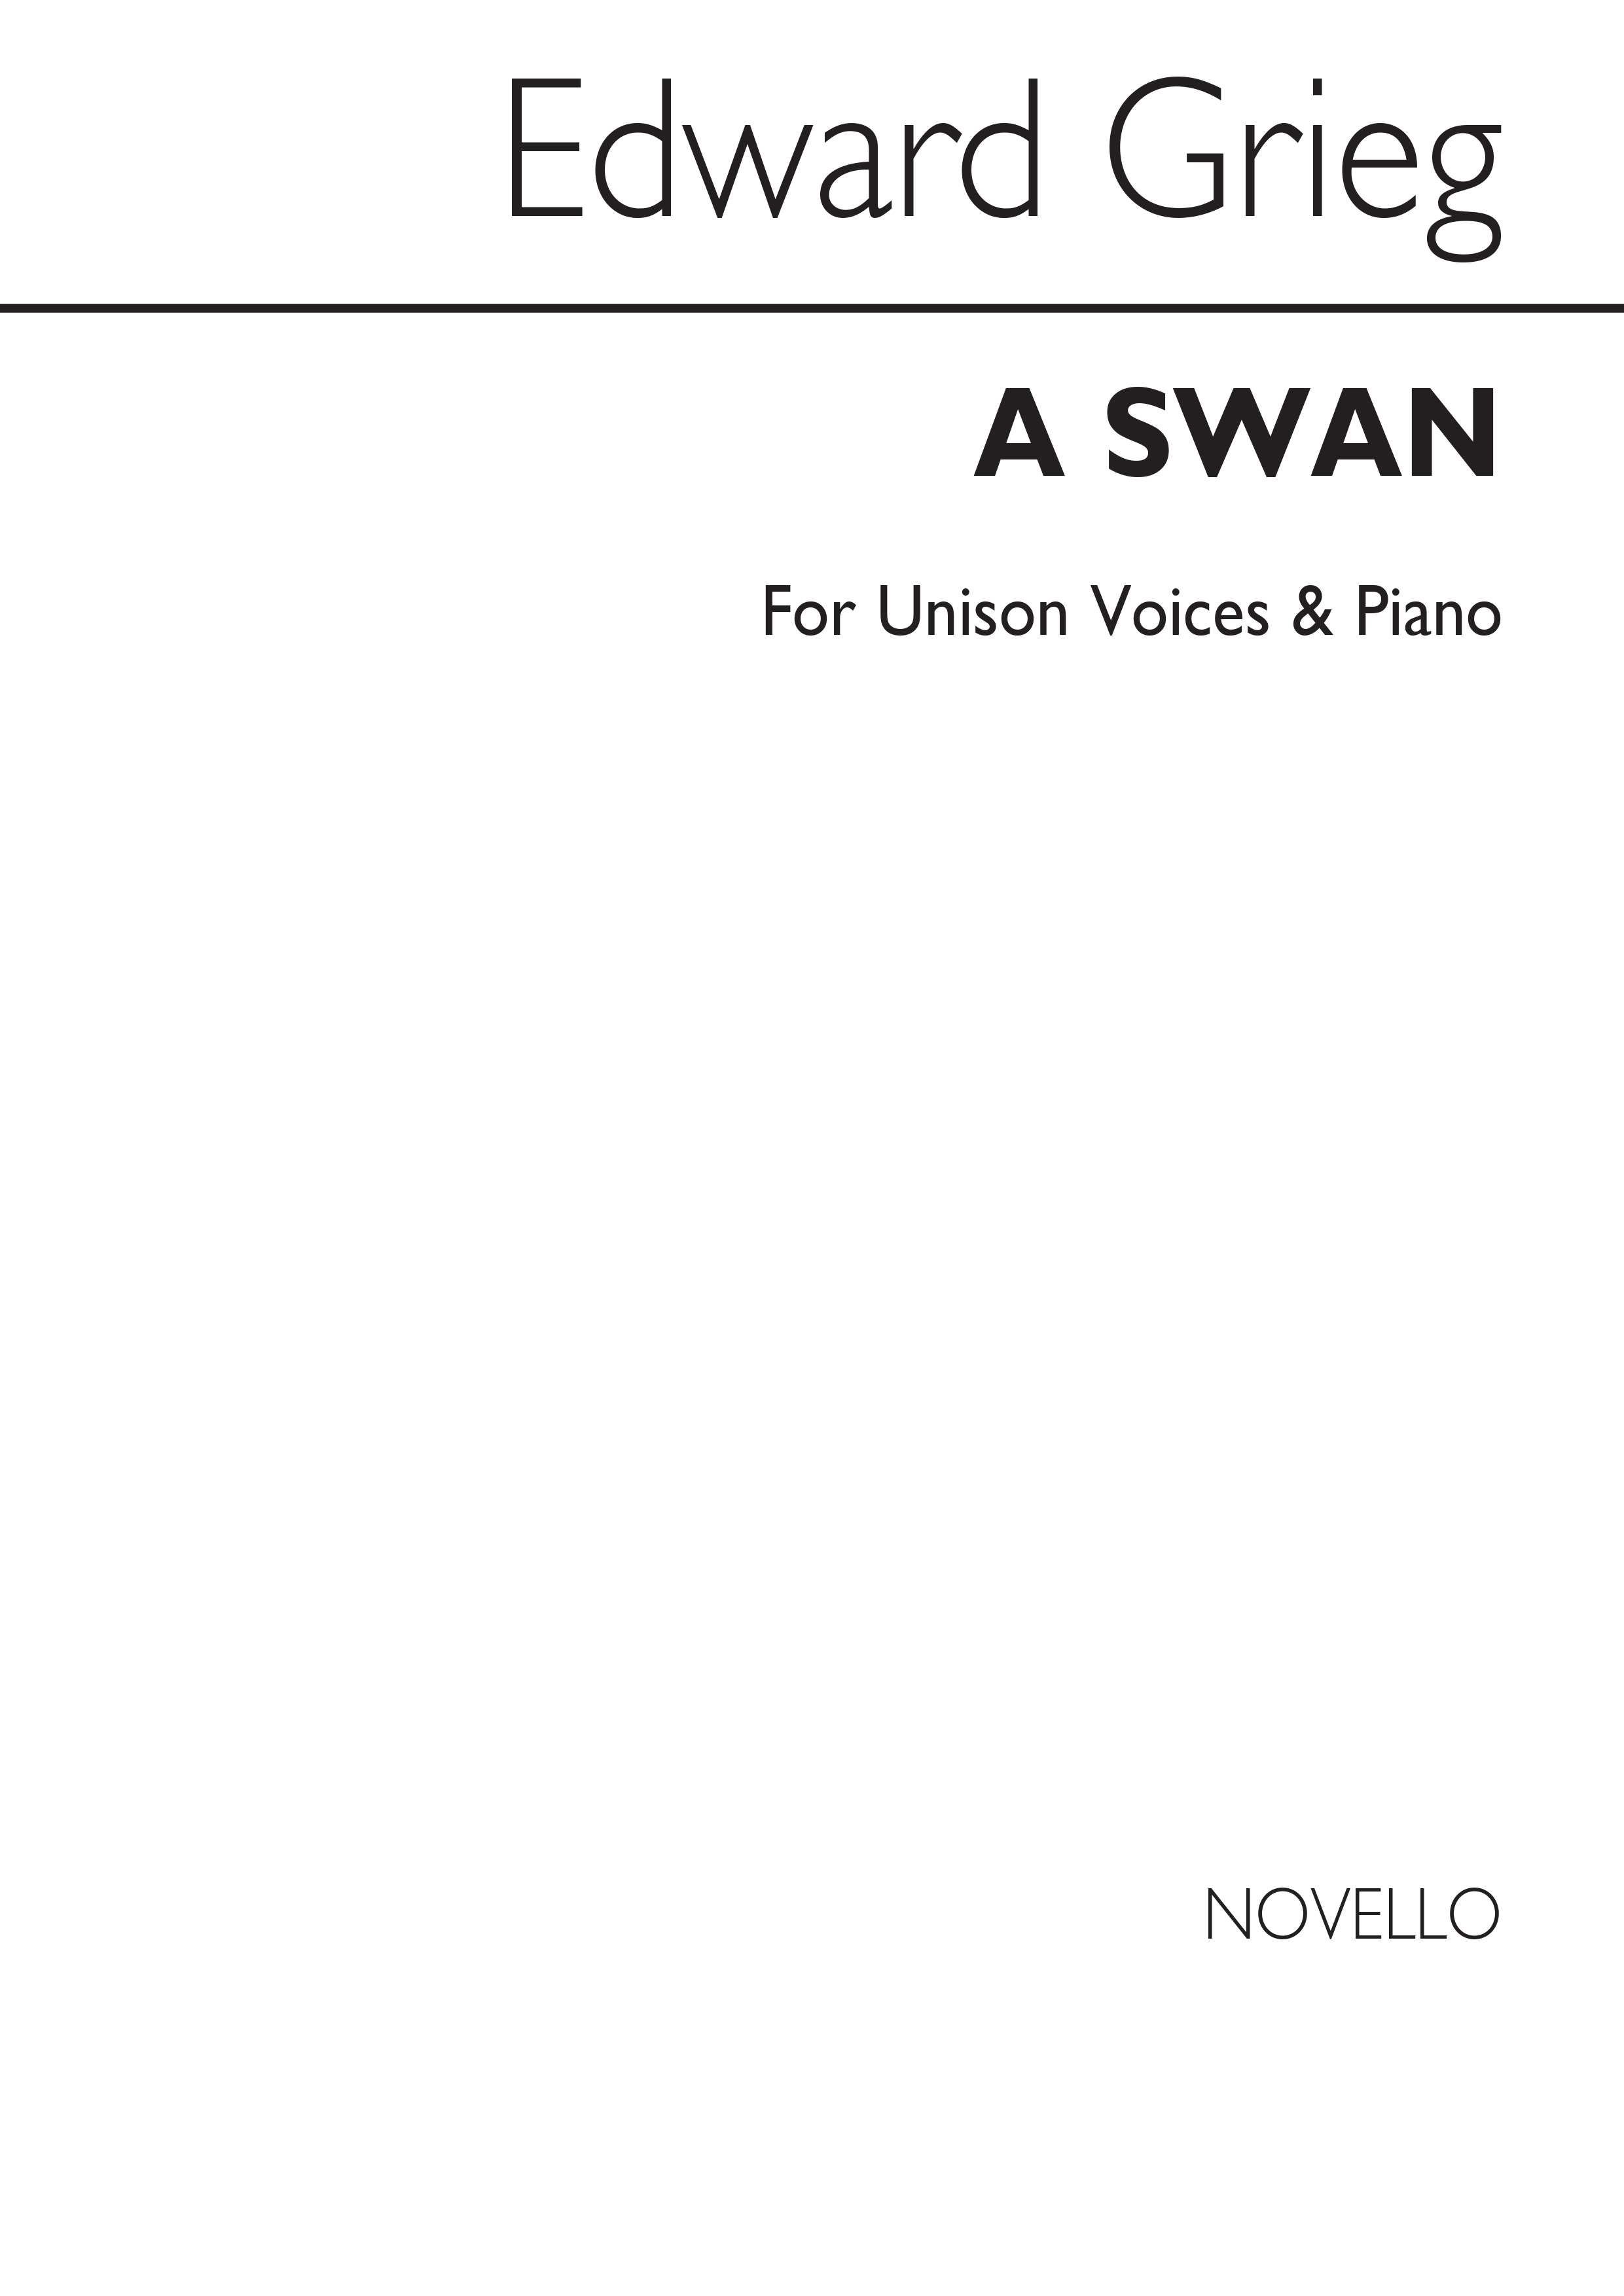 Grieg, E A Swan Unison/Piano